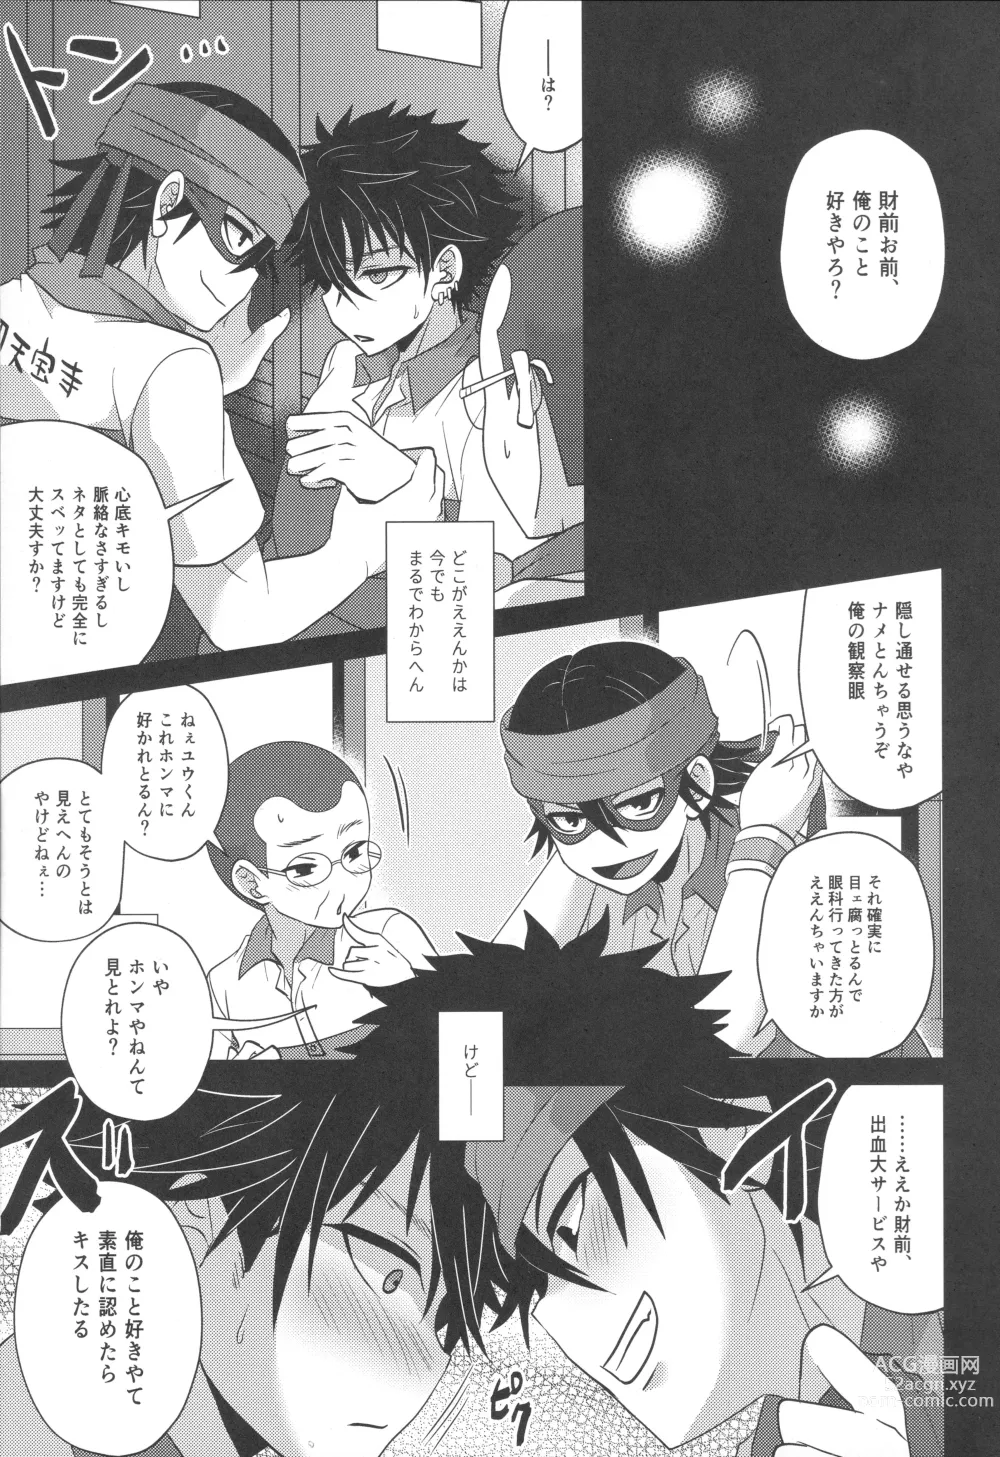 Page 4 of doujinshi Horeta mon Make Katta mon Kachi